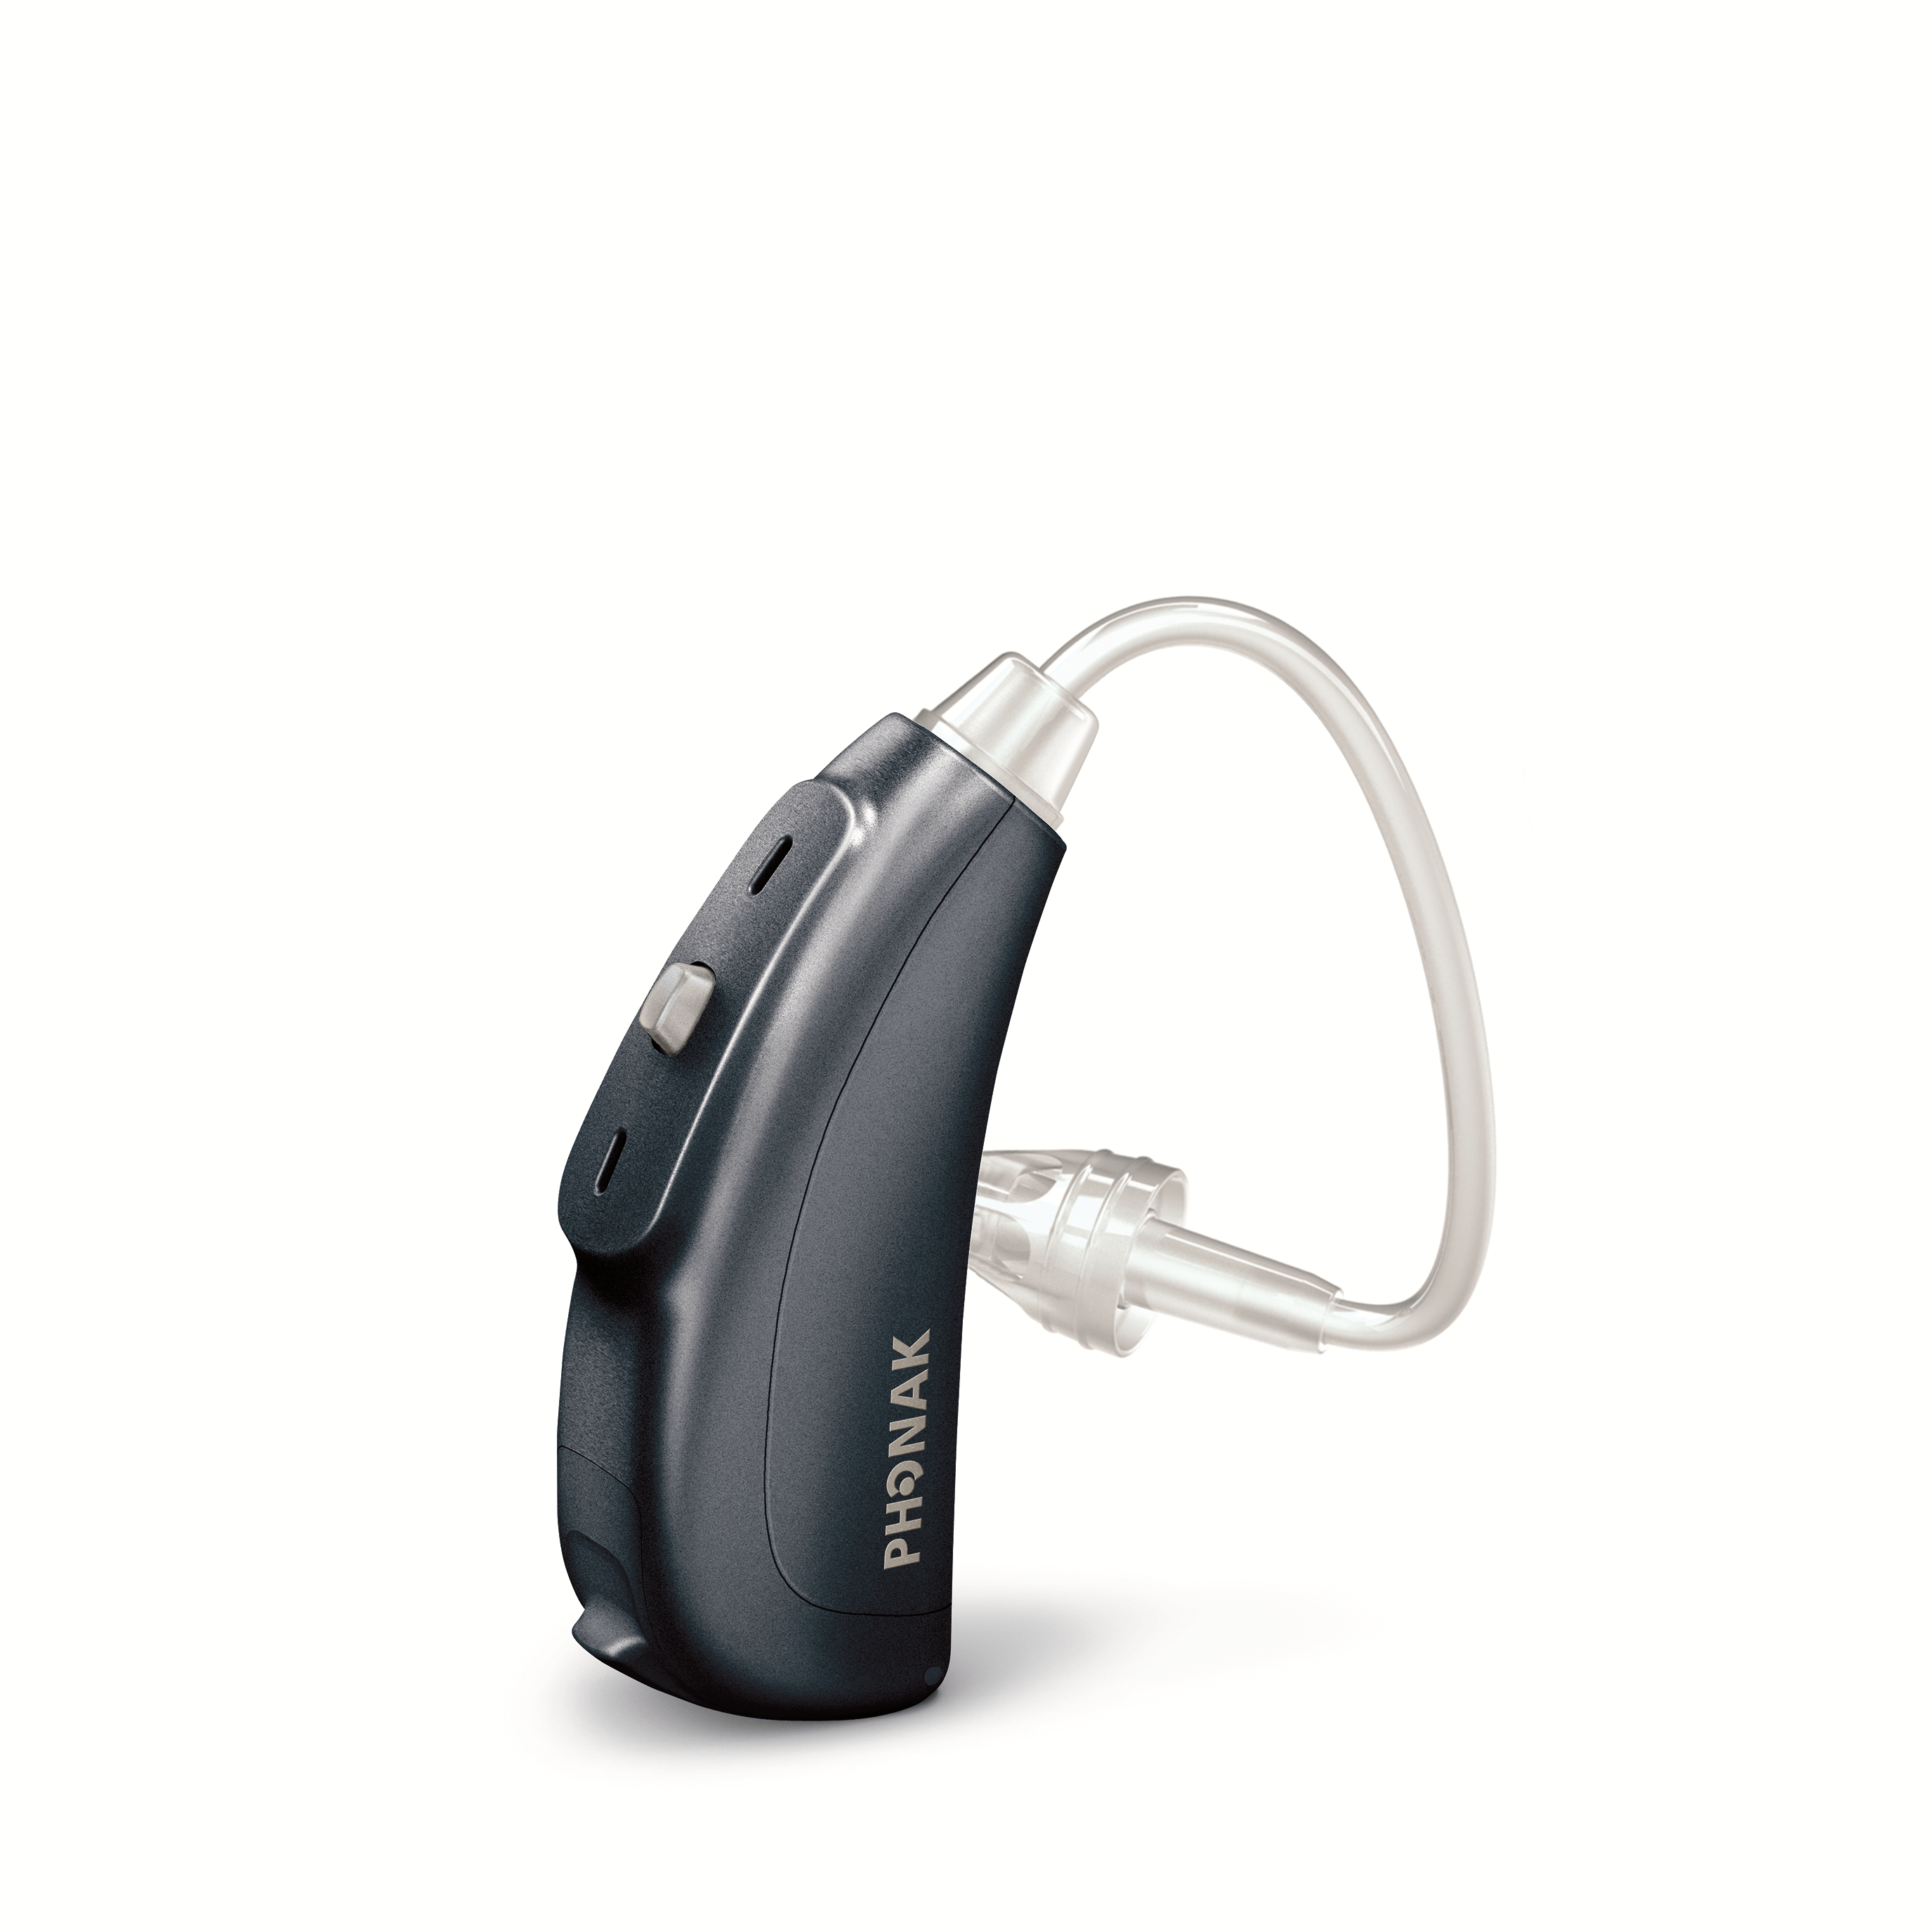 【大阪市補聴器相談室より回答します。】クロス補聴器バイクロス補聴器の性能について